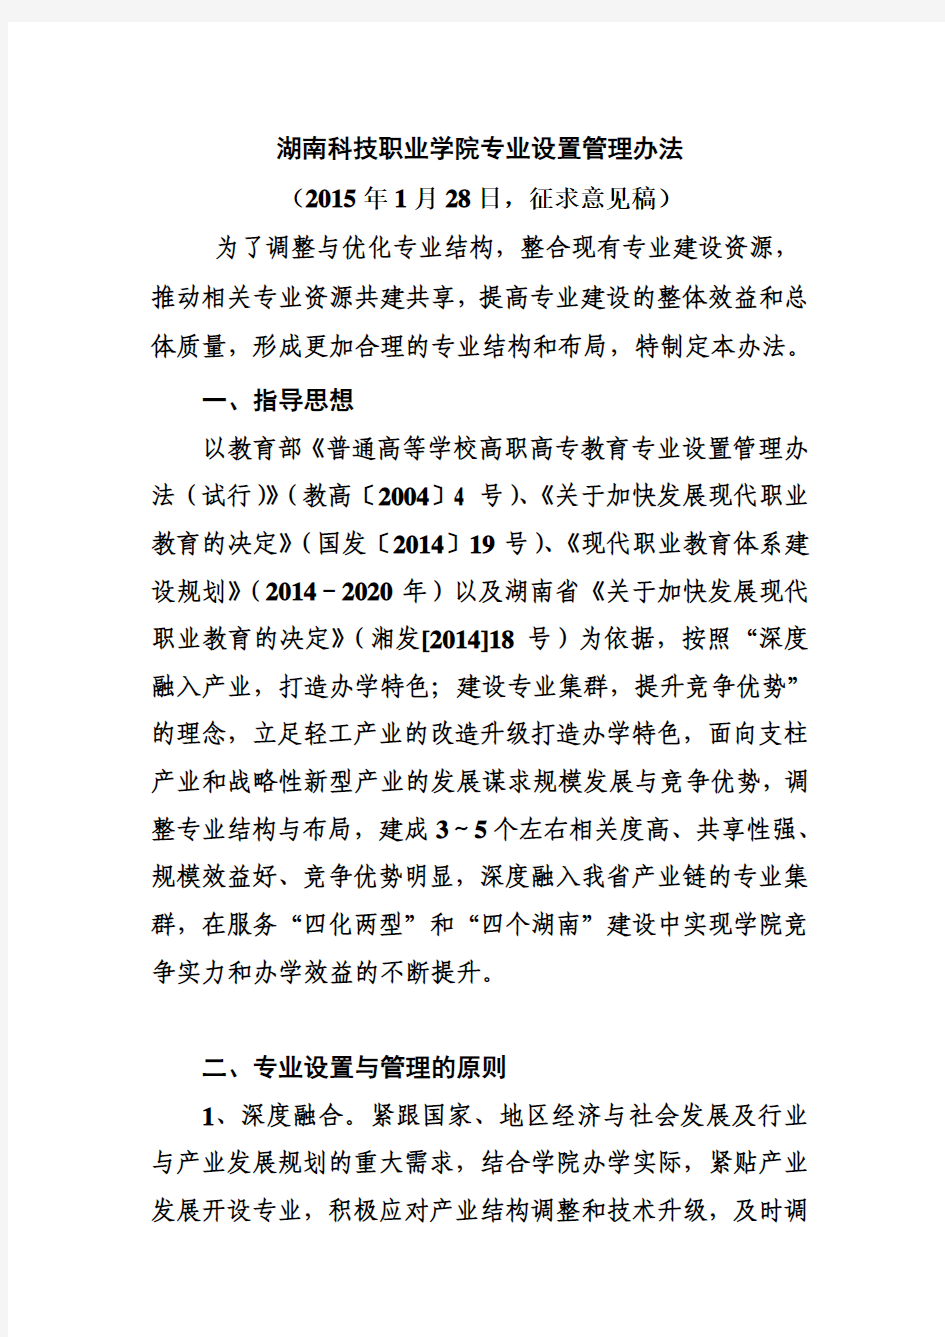 湖南科技职业学院专业设置管理办法(2015-1-28征求意见稿)